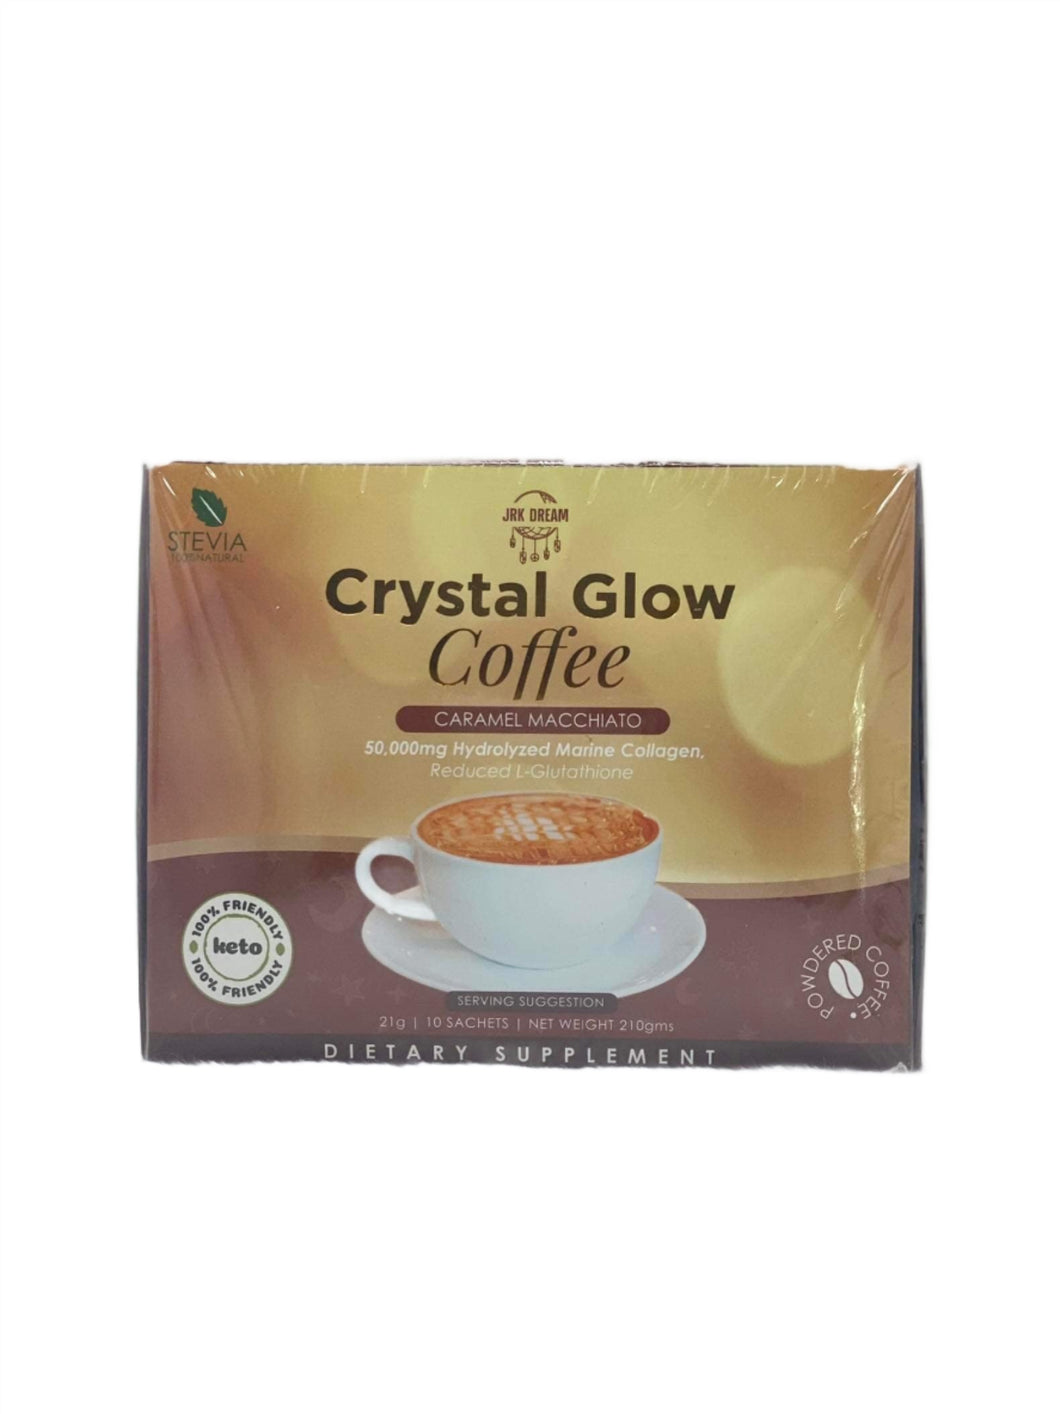 Crystal Glow Coffee Caramel Macchiato 10 Sachet